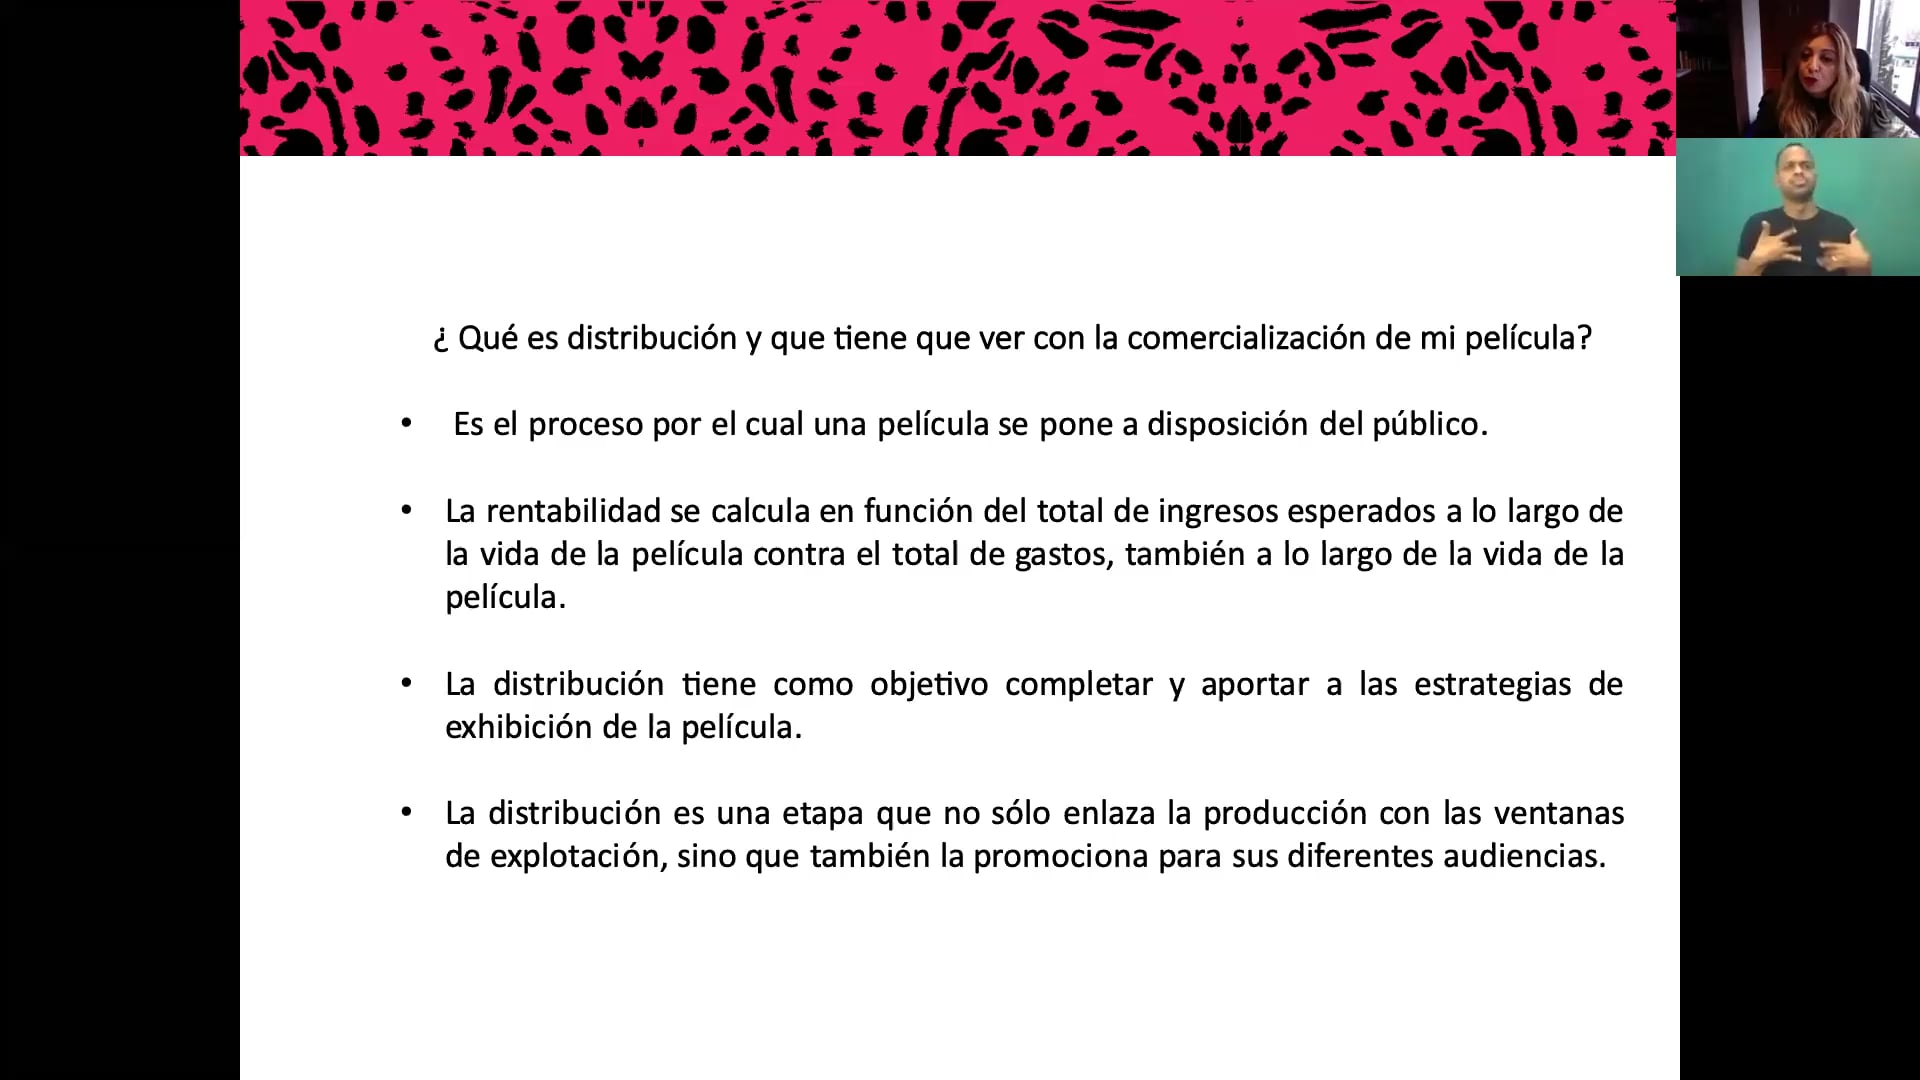 Clase Magistral: Distribución y mercadeo por Consuelo Castillo